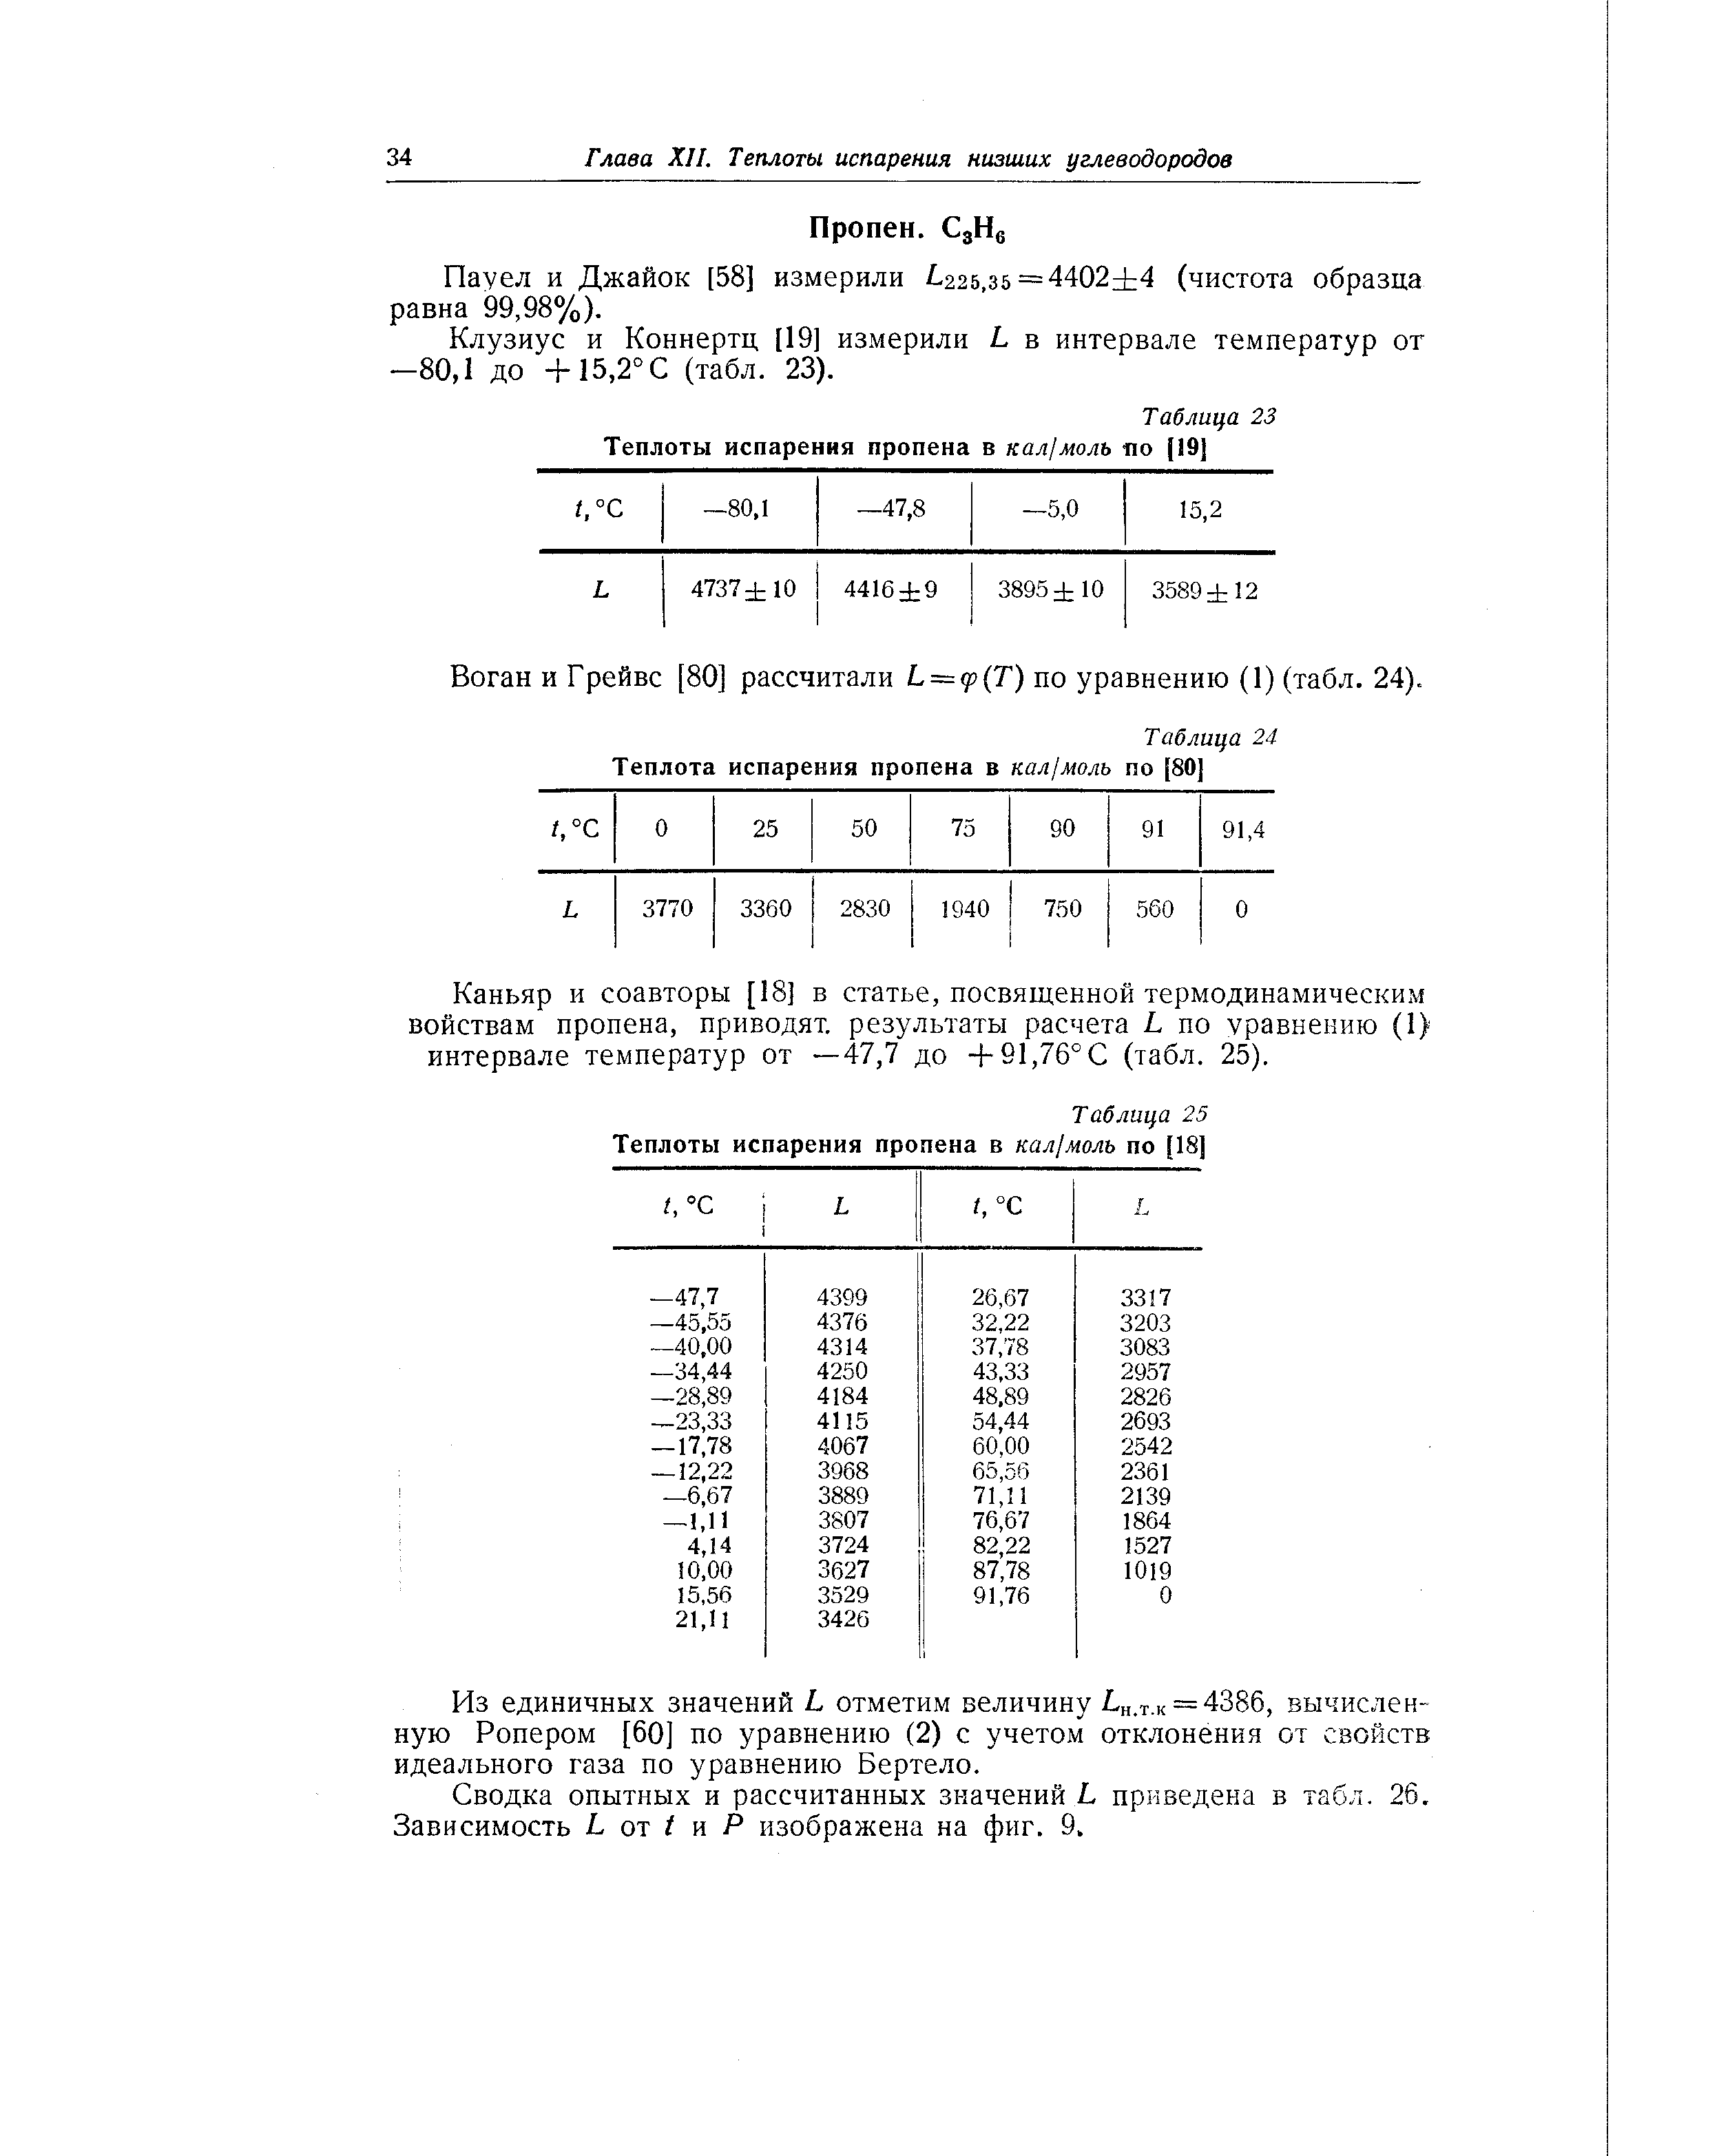 Воган и Грейвс [80] рассчитали Ь = р(Т) по уравнению (1) (табл. 24).